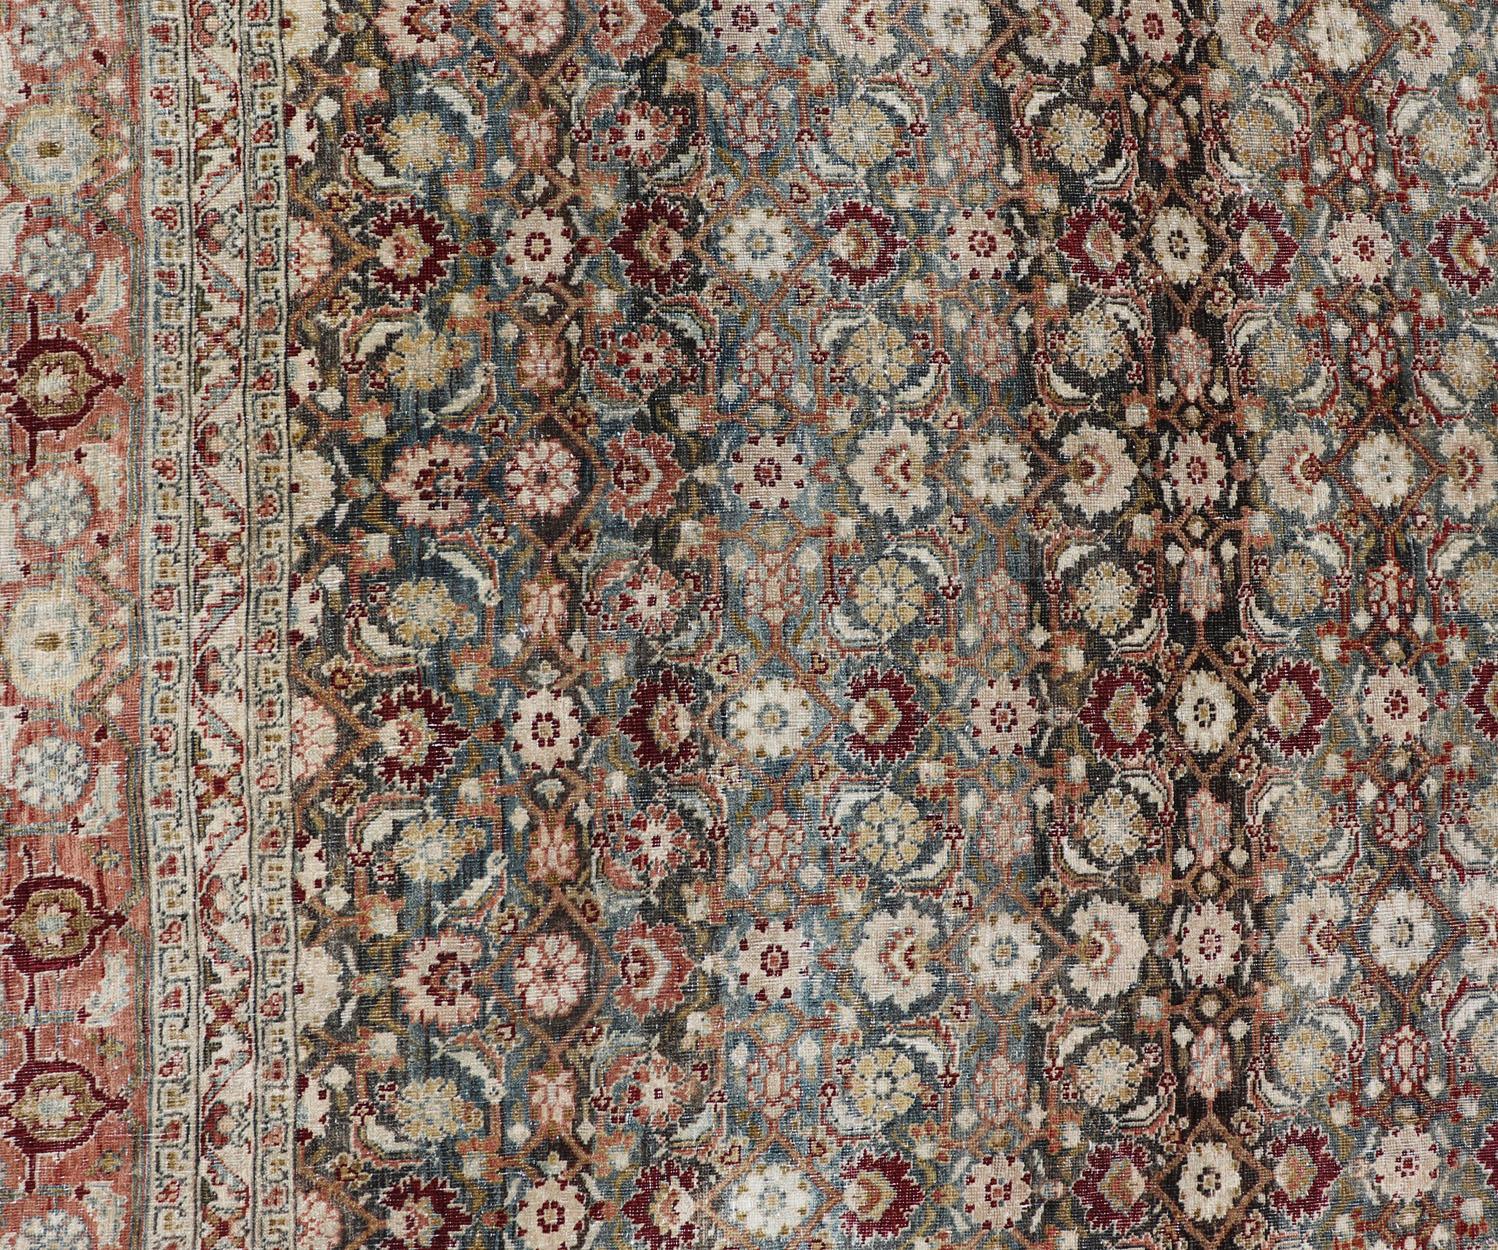 Antique Bidjar long gallery rug from Persia with ornate floral all-over Herati design, Keivan Woven Arts/rug /TU-KAH-100, country of origin / type: Iran / Bidjar, circa 1900.

Measures: 7' 7